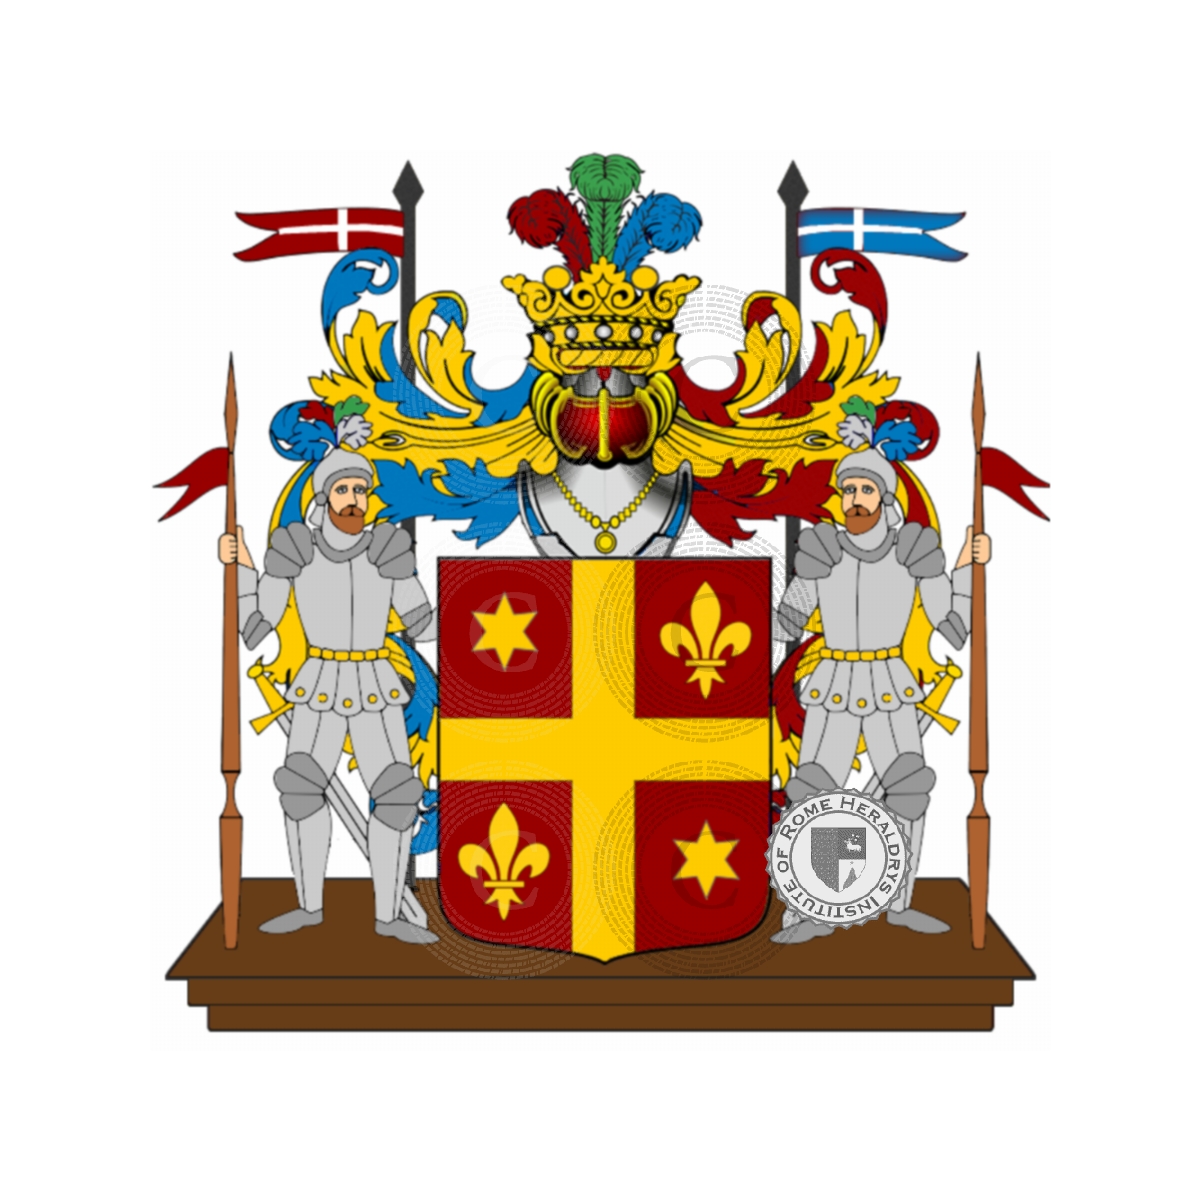 Coat of arms of familysiri